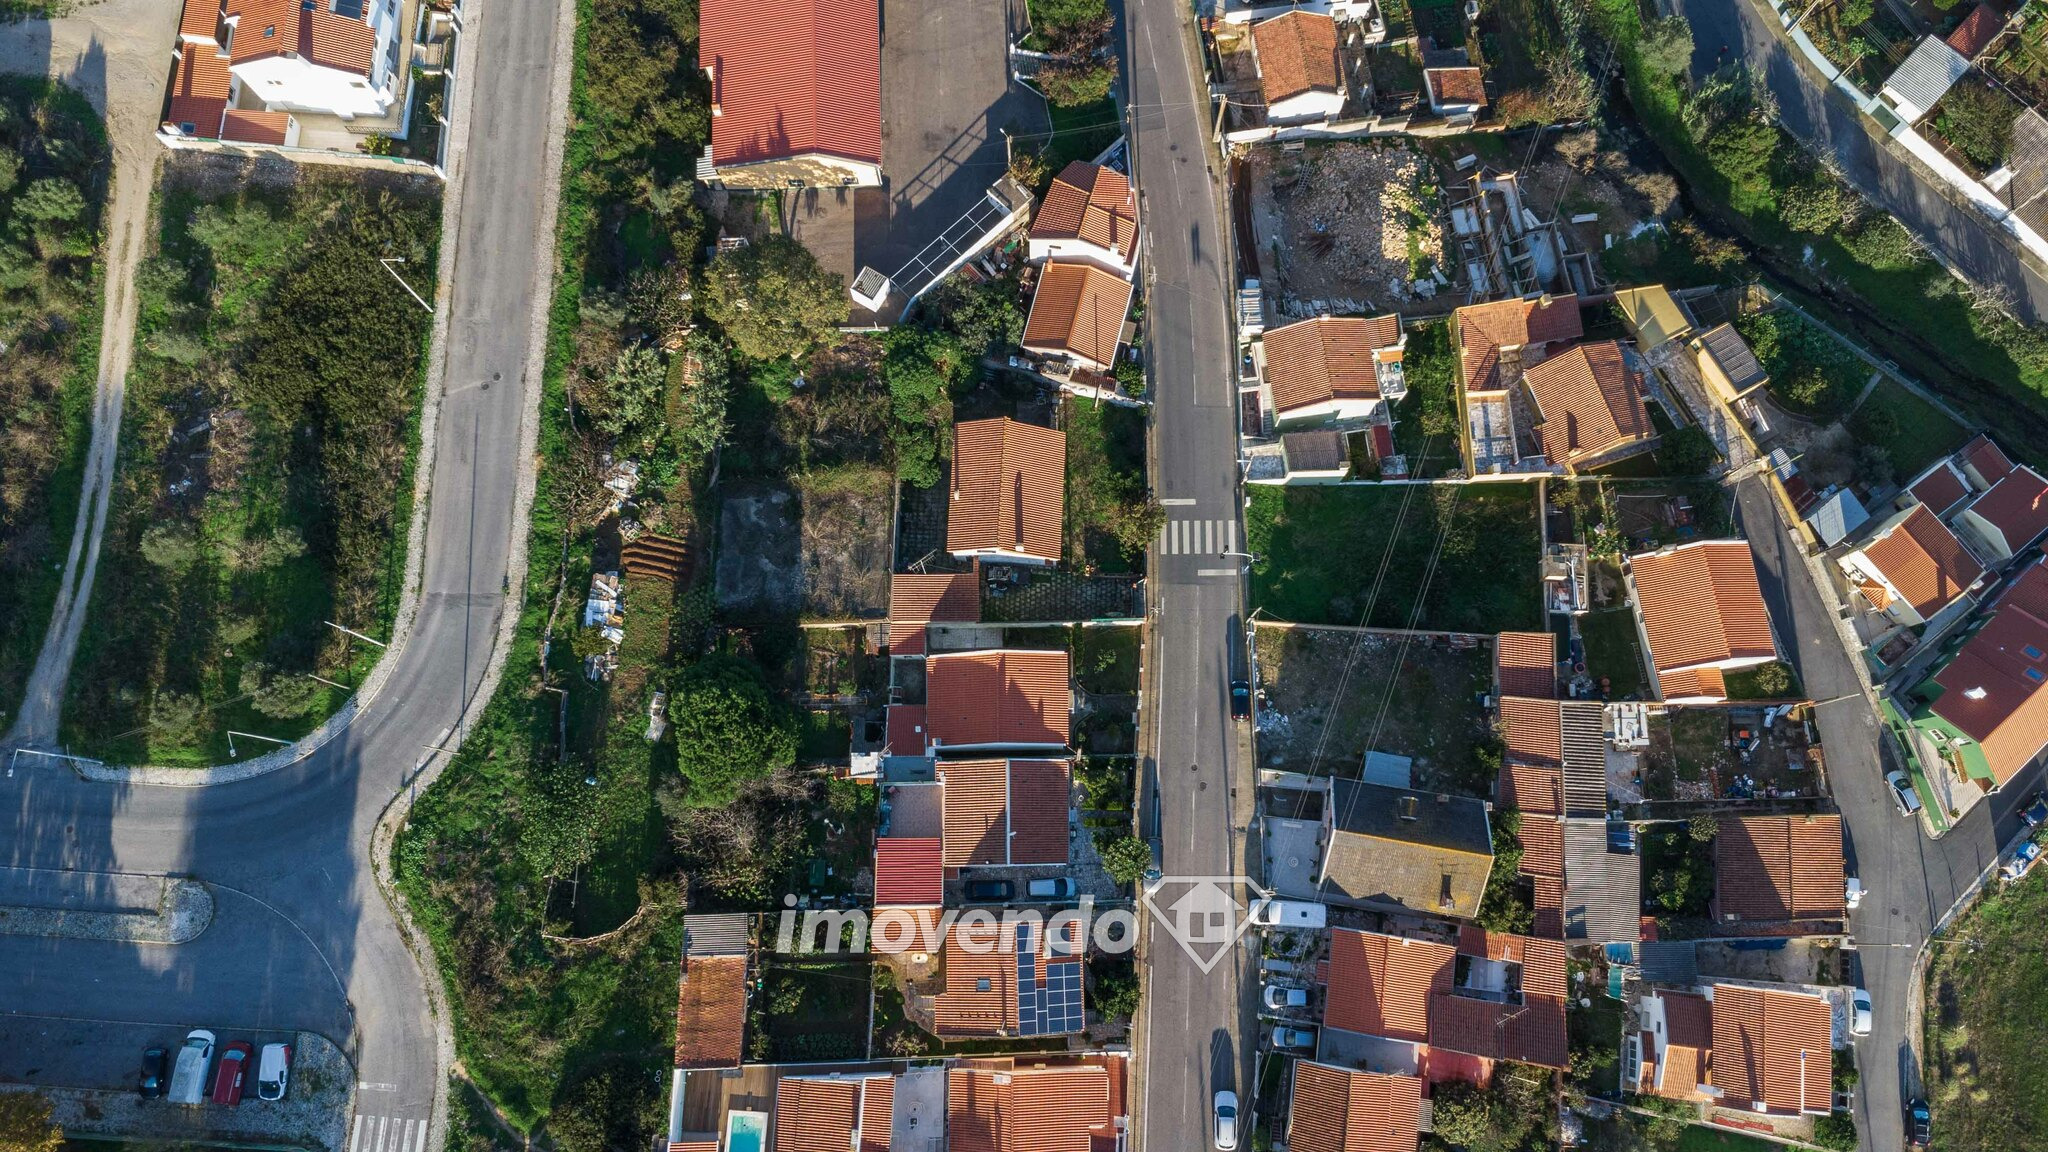 Moradia isolada T4+1 com garagem e jardim, em Albarraque, Sintra